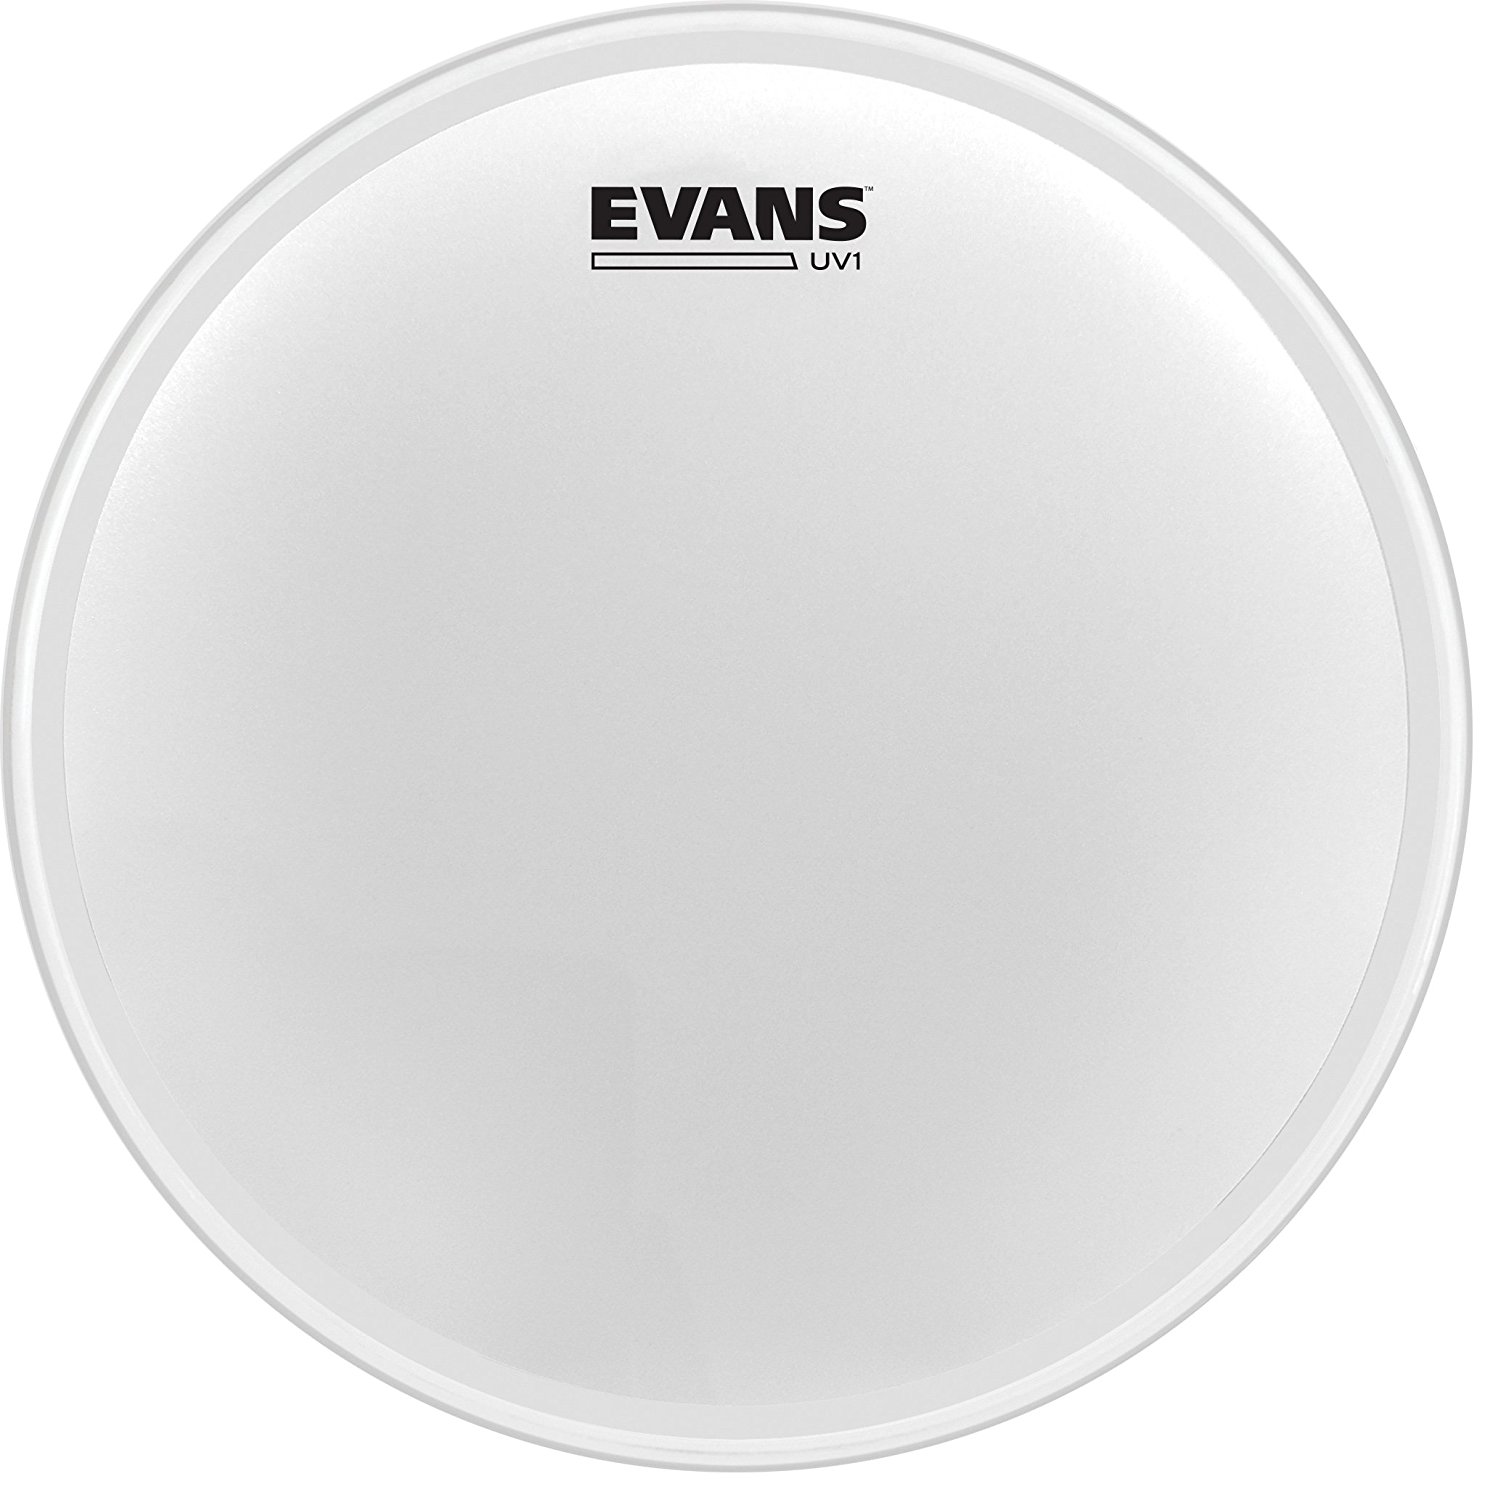 An image of Evans UV1 Coated Snare/Tom Batter 10" | PMT Online